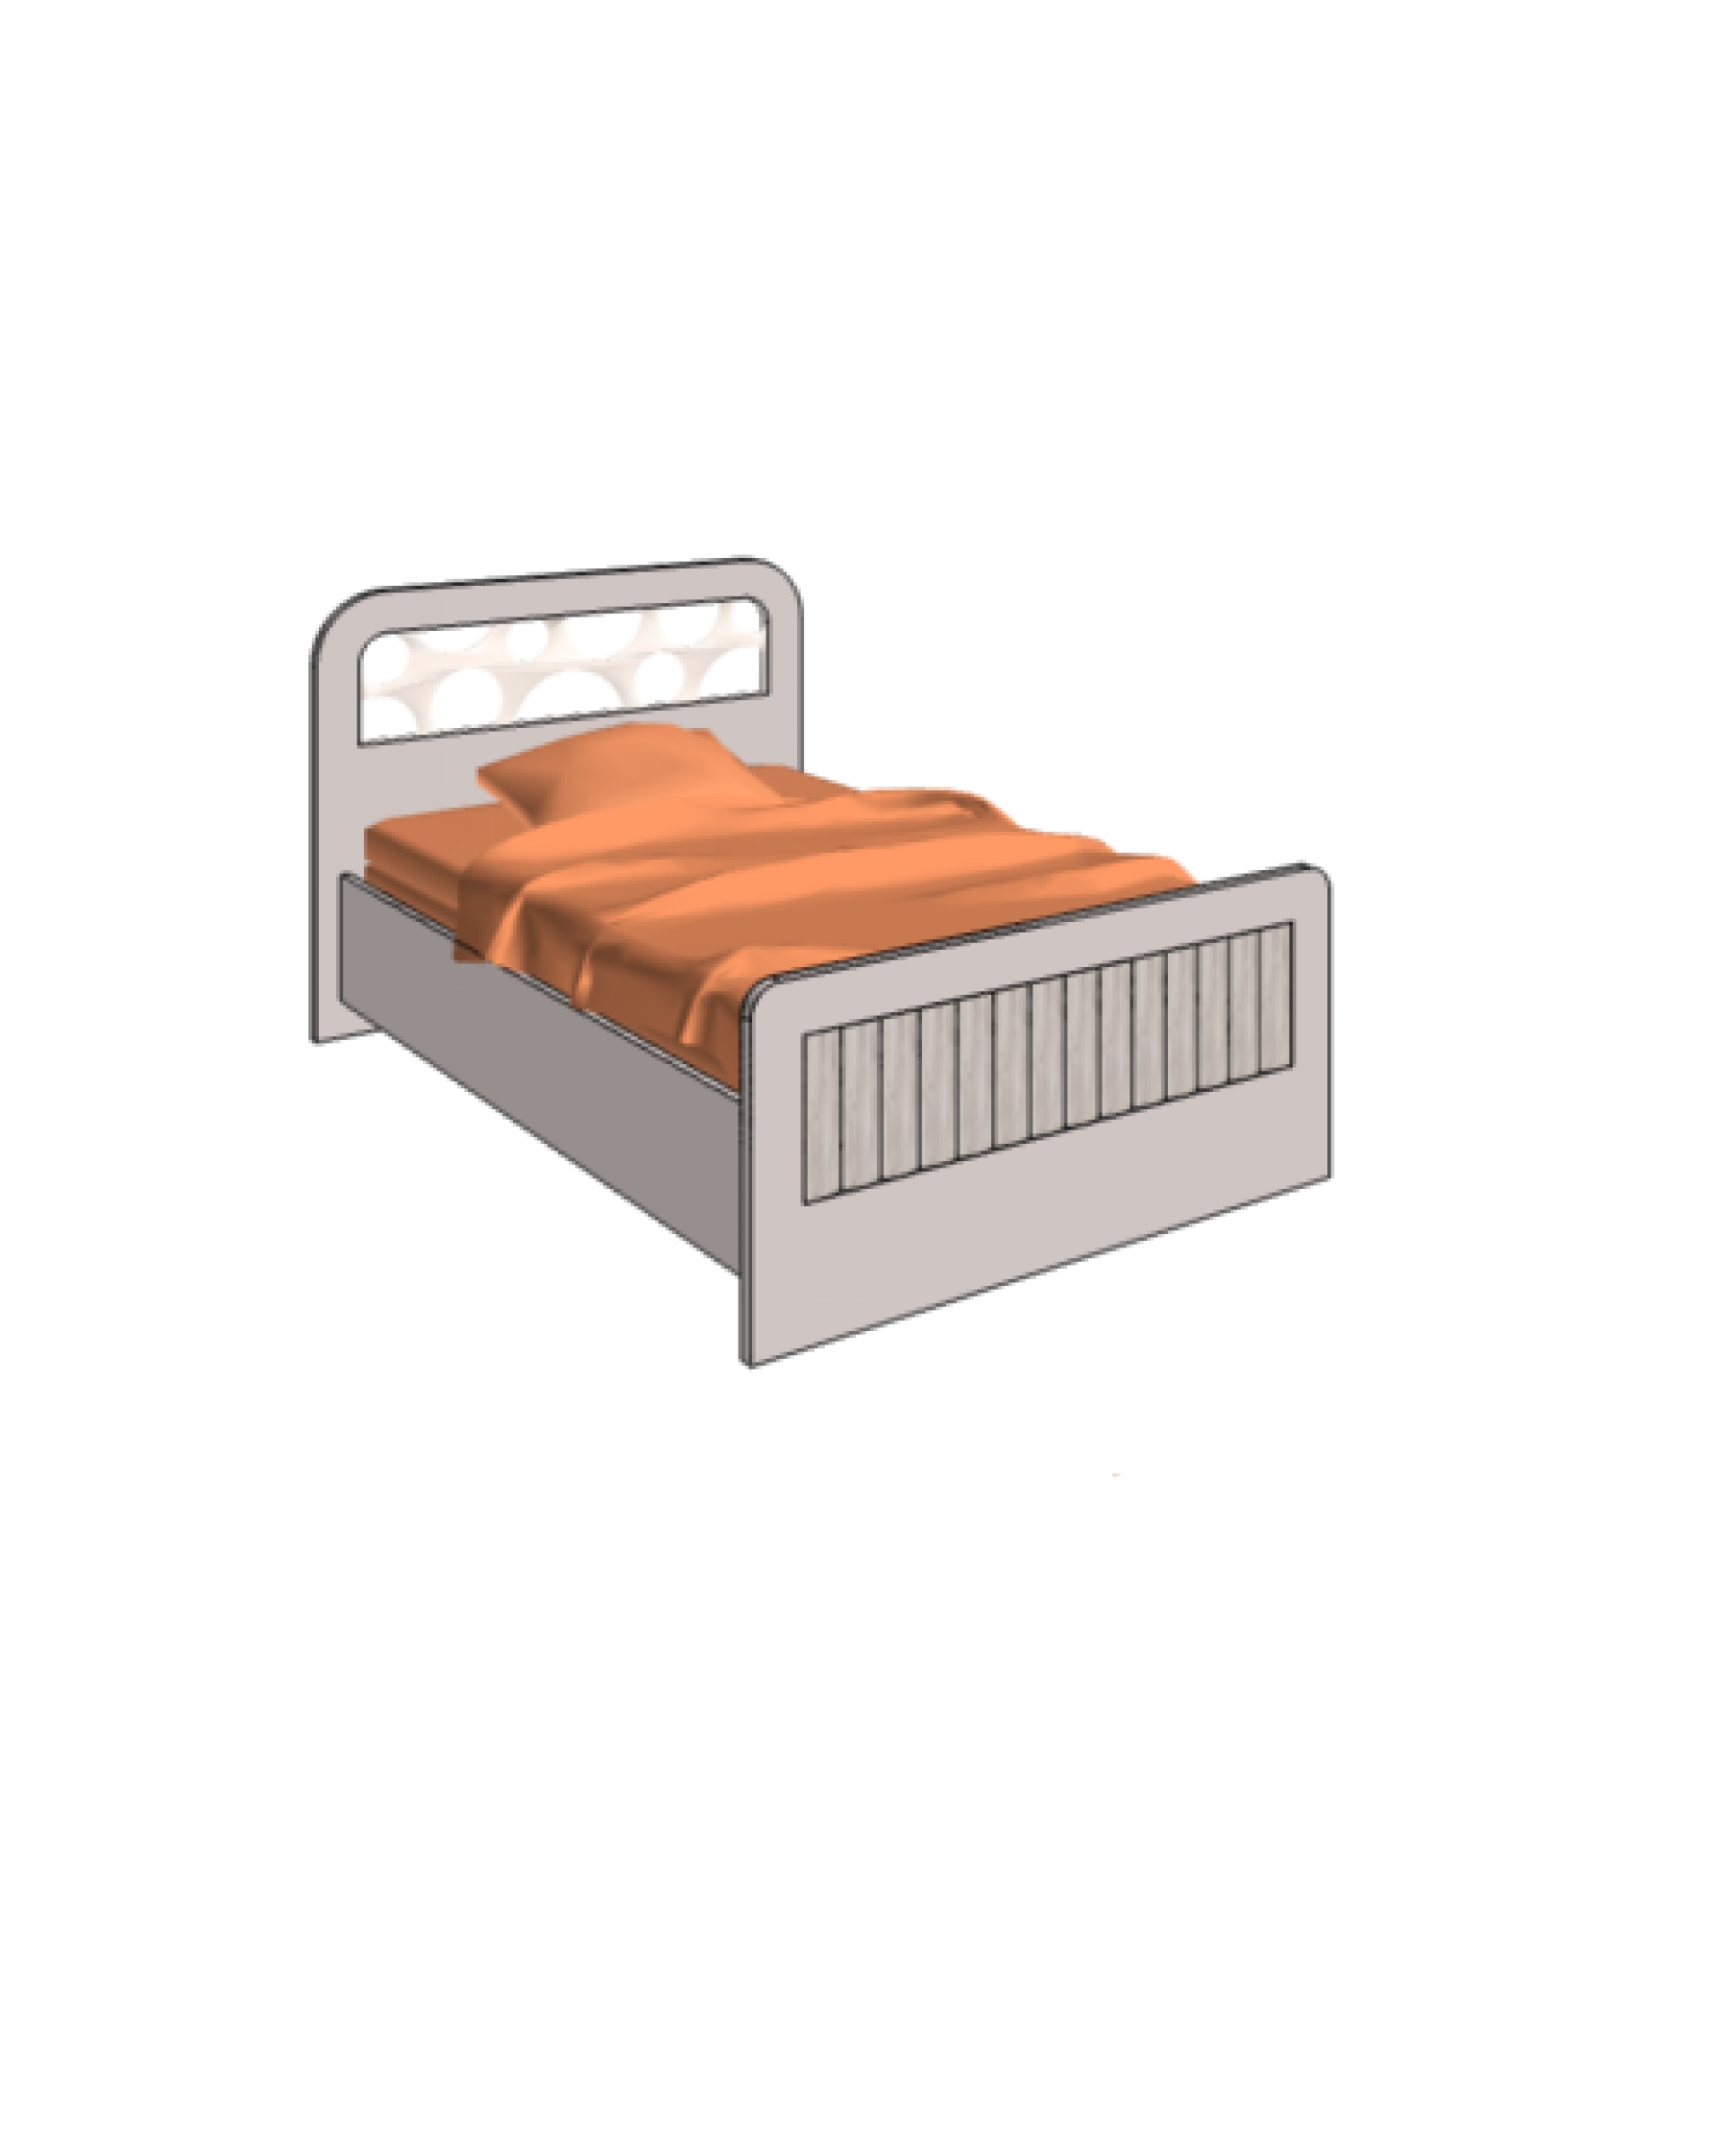 Klюkva кровать отдельностоящая, простая. арт: VB1_12